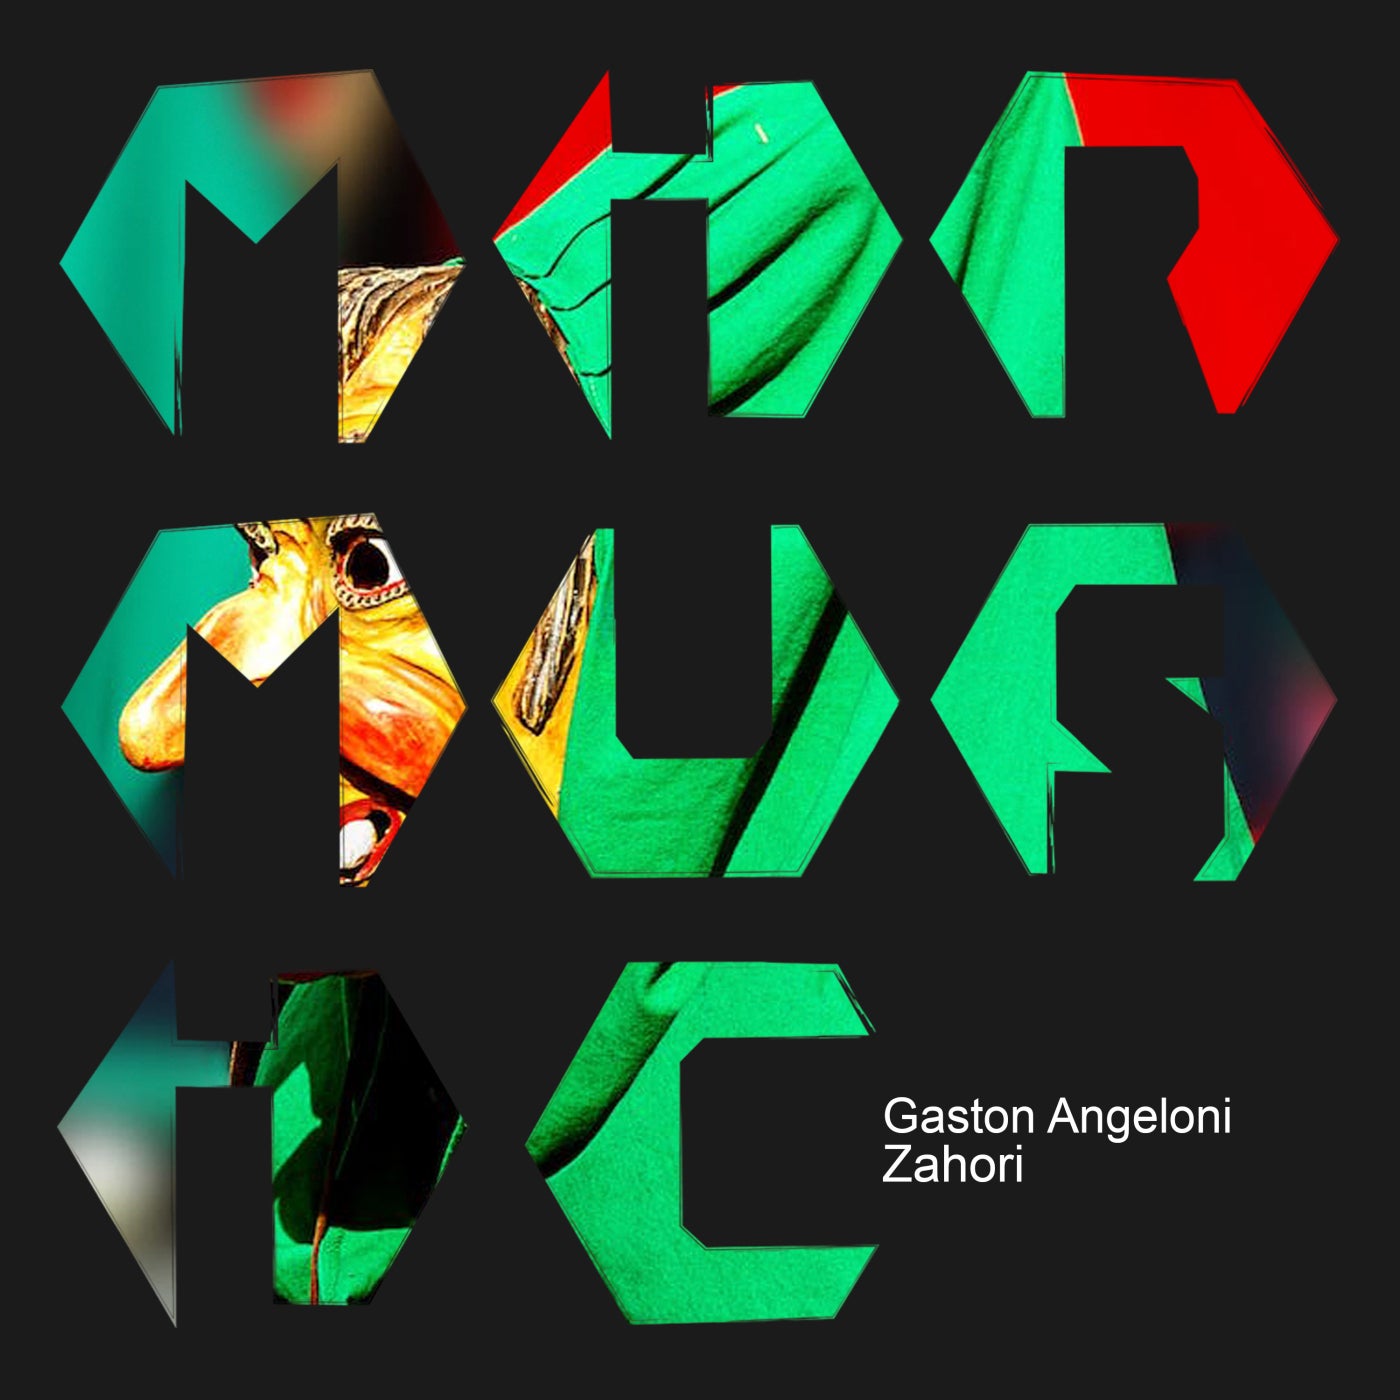 Gaston Angeloni - Zahori [MIR MUSIC]